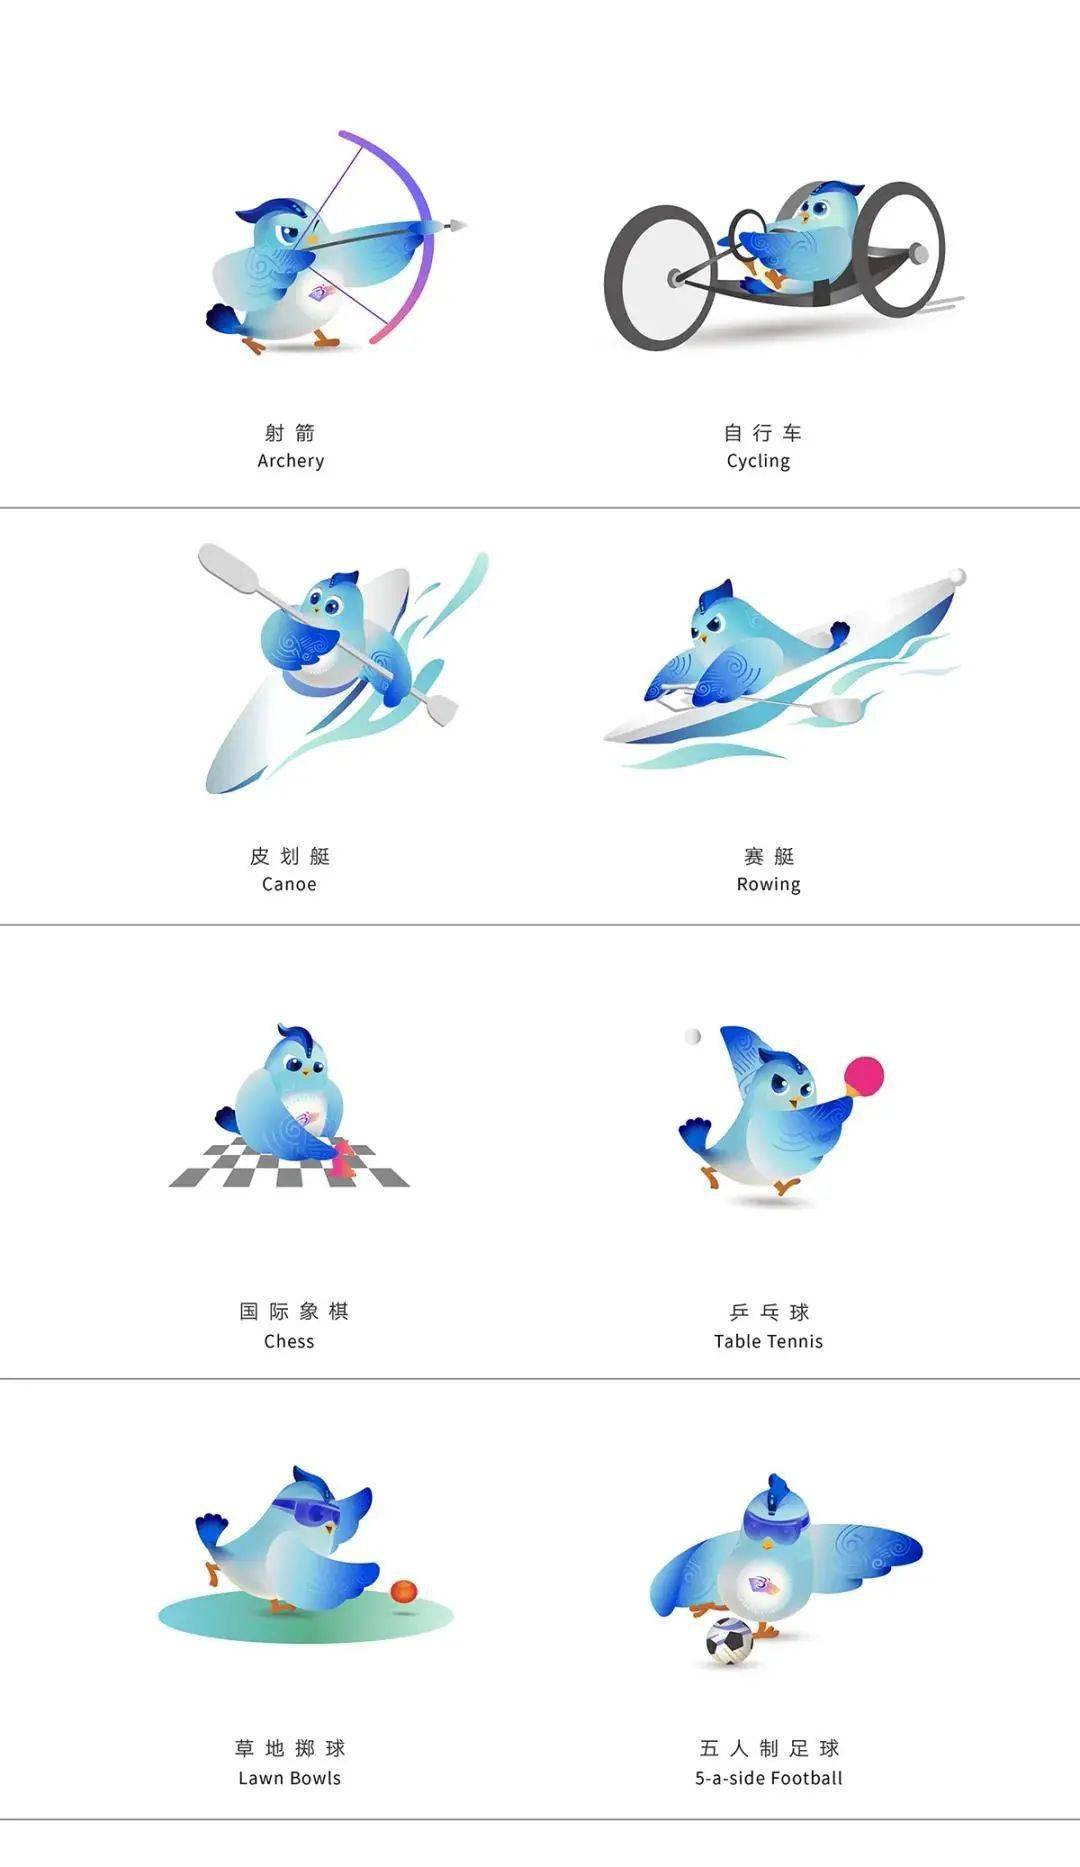 杭州亚运会亚残运会吉祥物项目运动造型设计发布